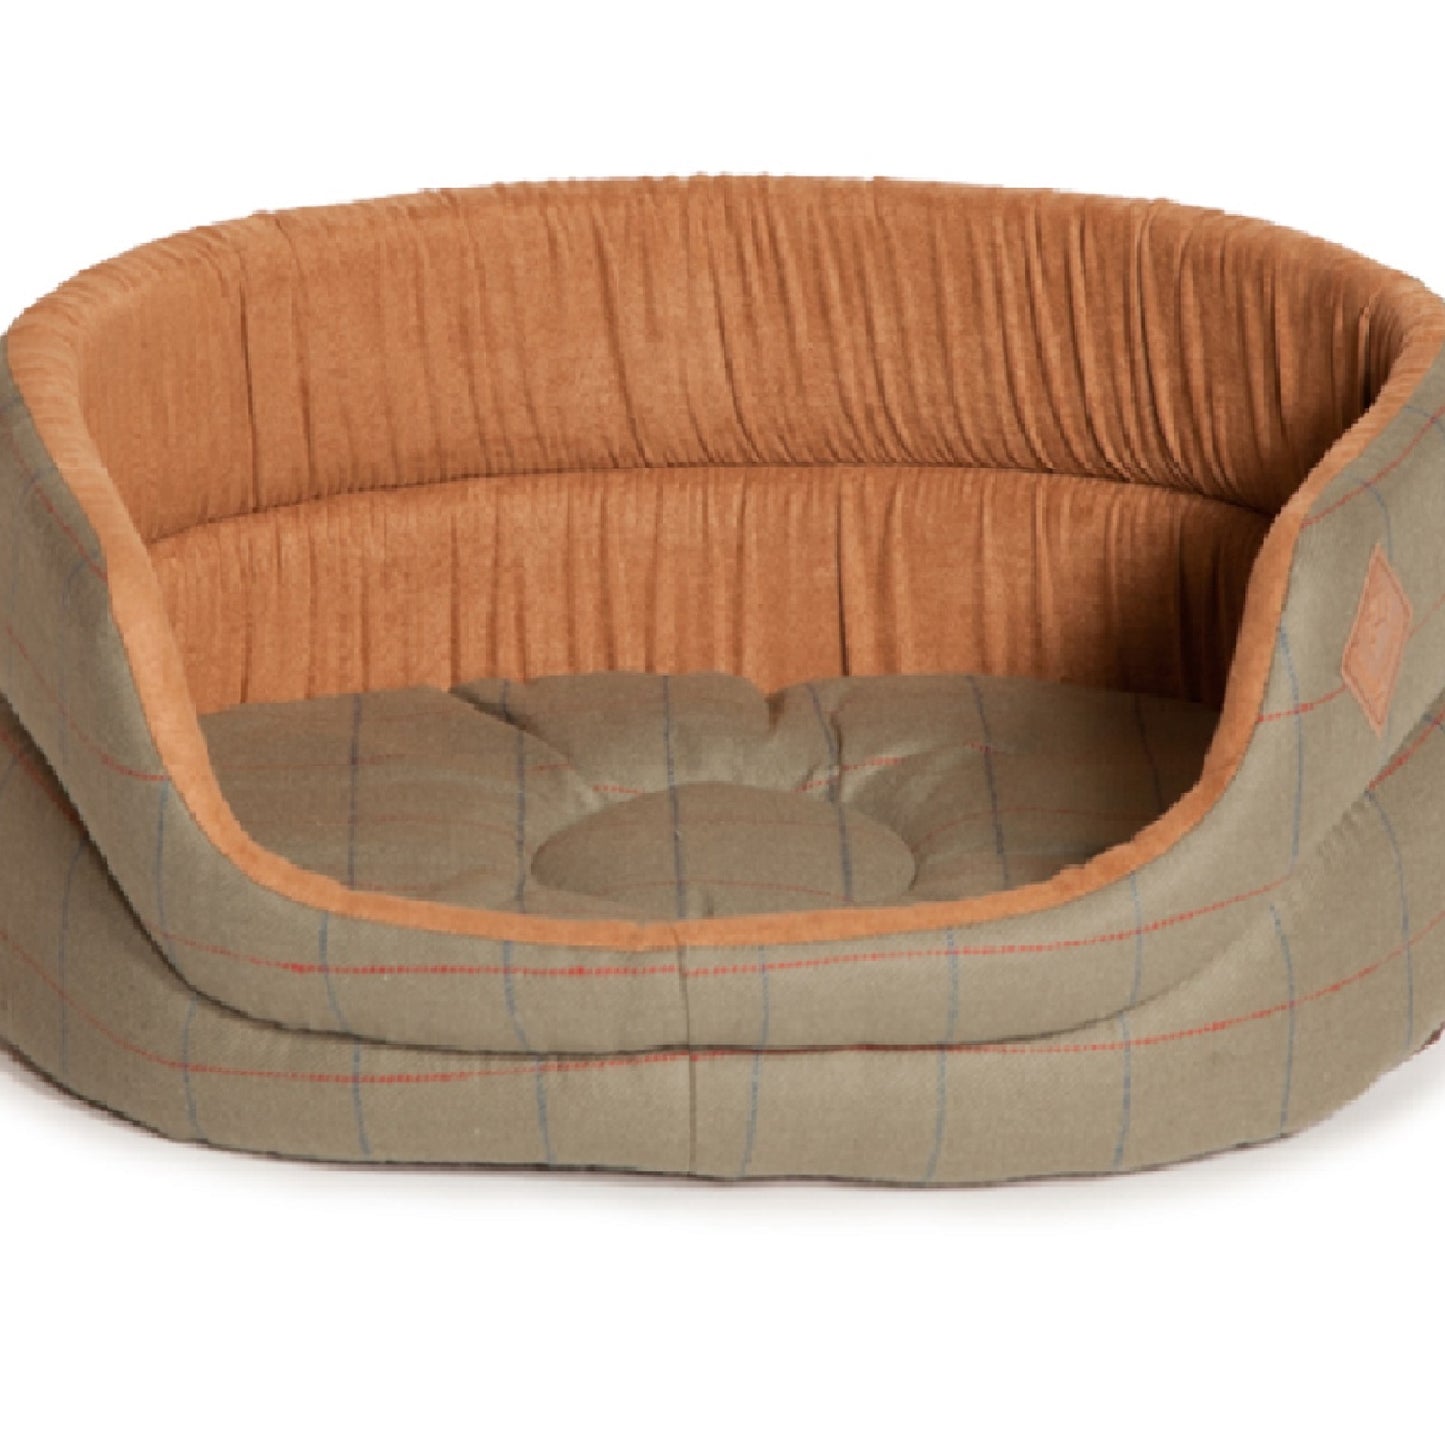 Danish Design - Tweed Slumber Bed